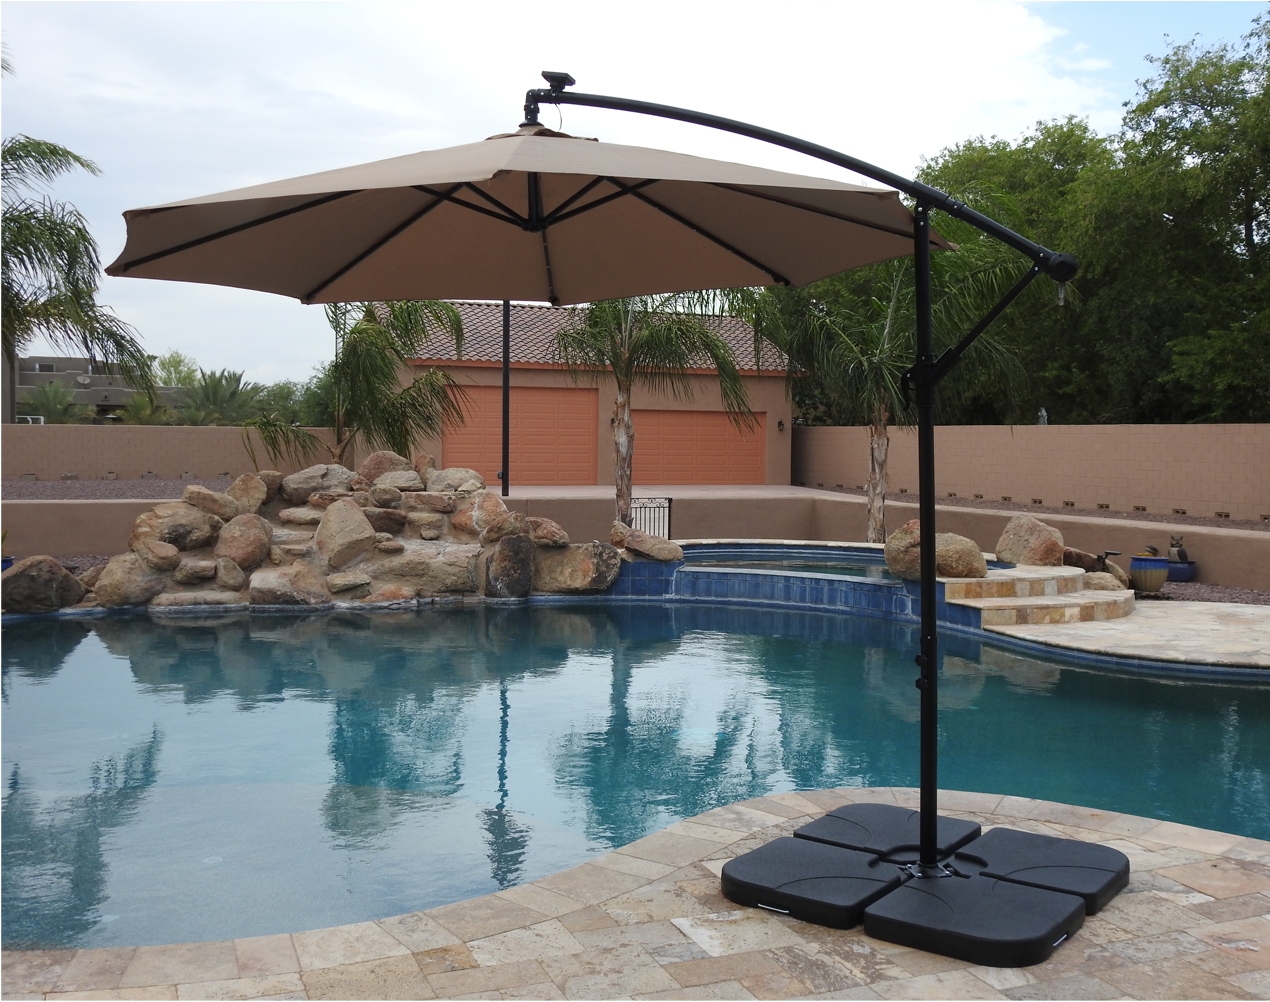 Hiland Cantilever Umbrella with Base - Tan